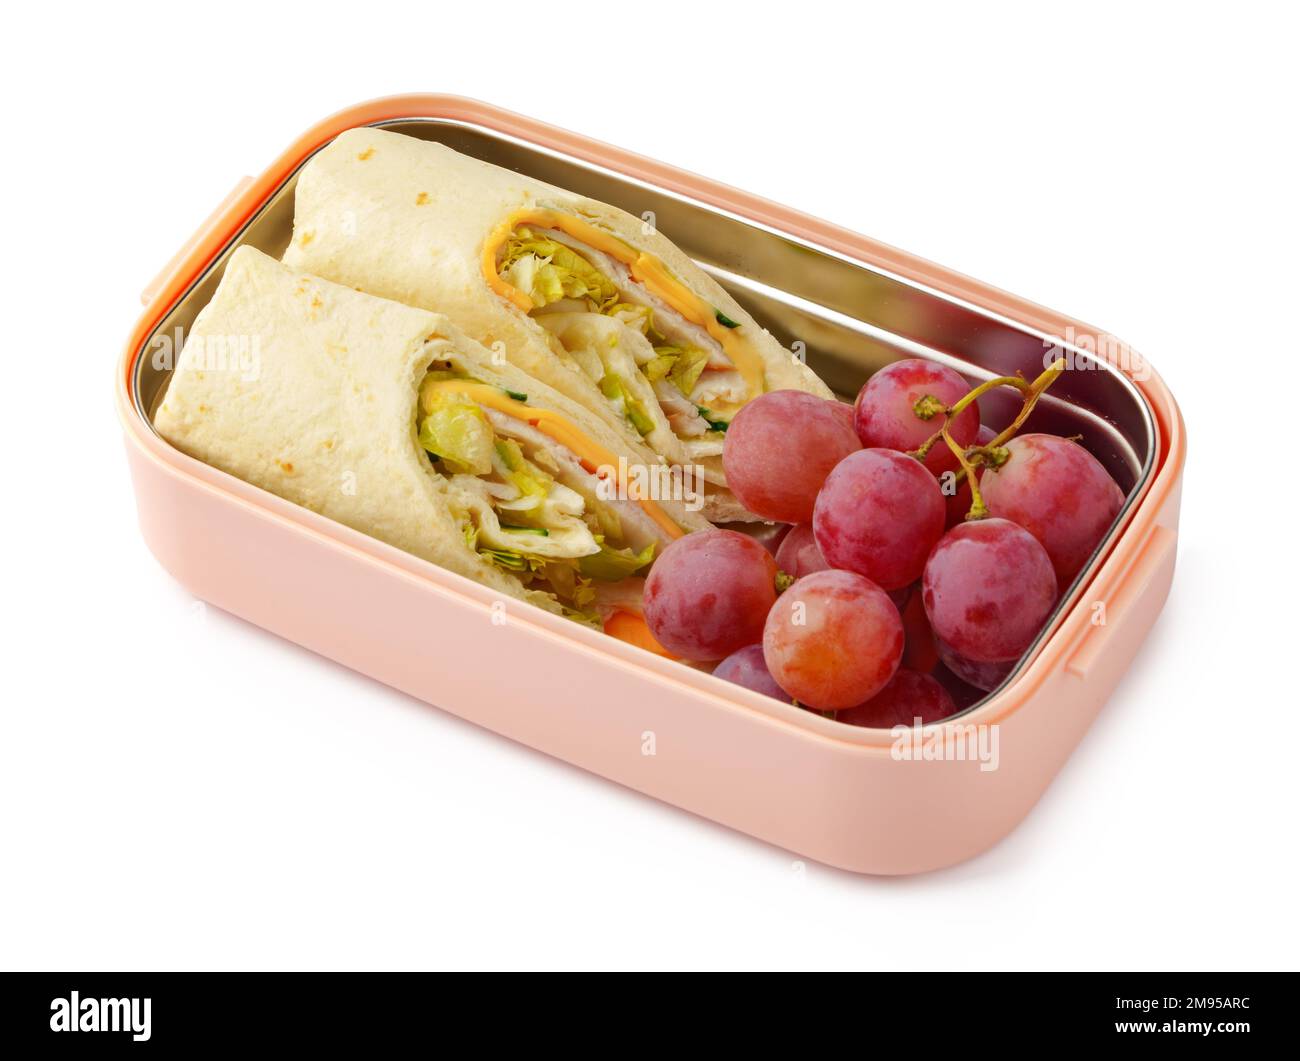 Consegna di alimenti sani in scatola da togliere isolata su sfondo bianco Foto Stock